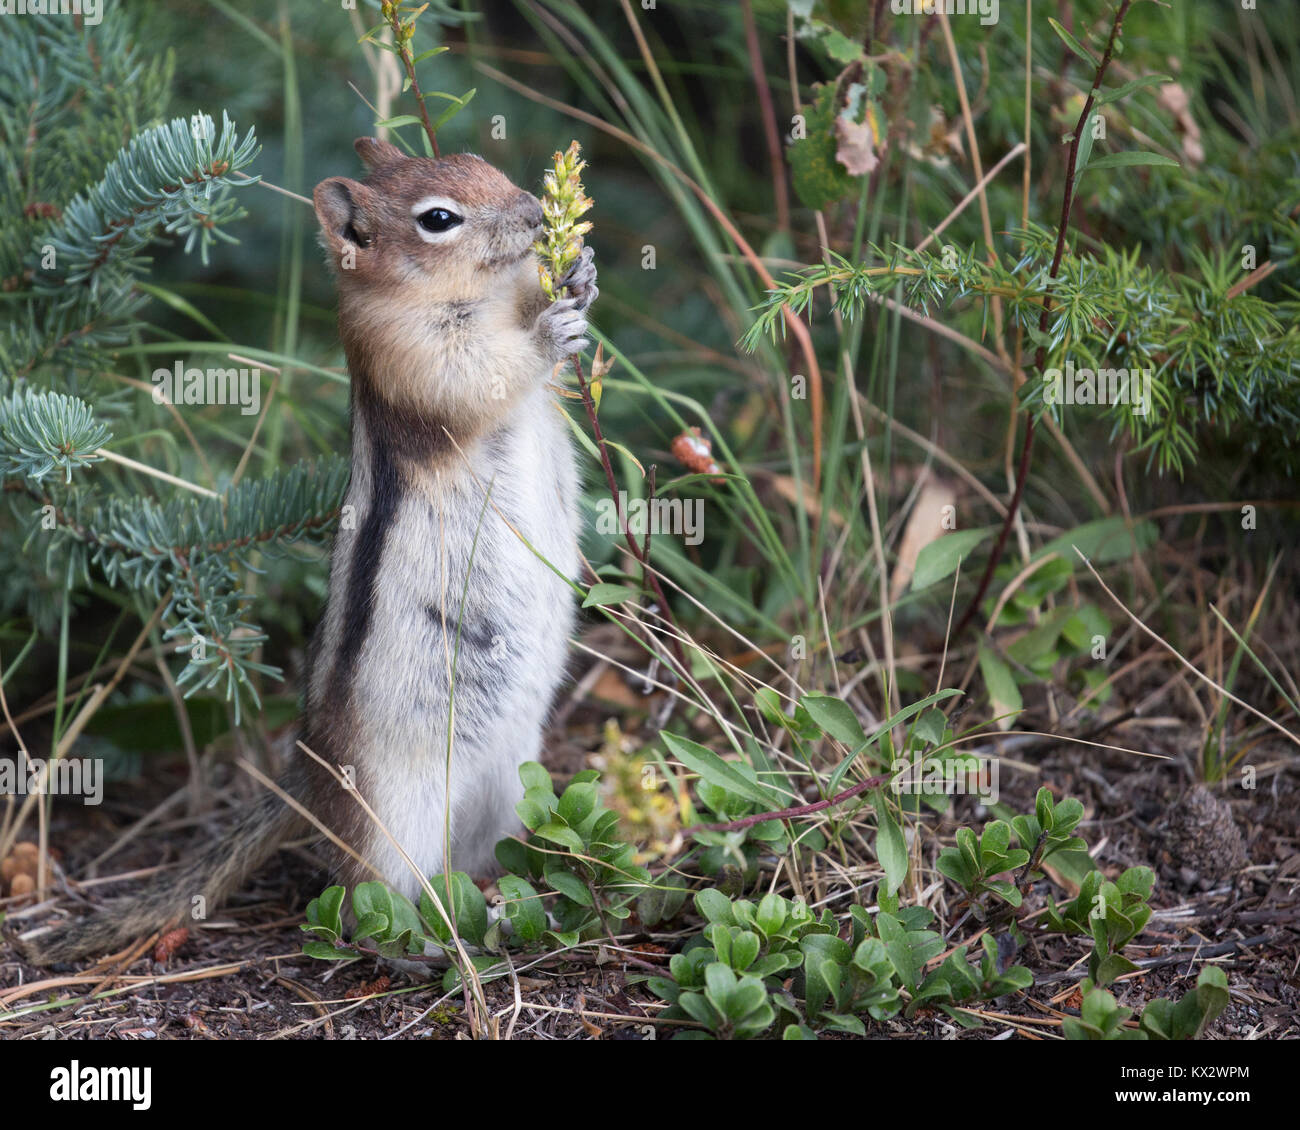 Écureuil de terre Ã la manée dorée se nourrissant d'une tige végétale dans la forêt boréale, parc national Banff (Callospermophilus lateralis) Banque D'Images